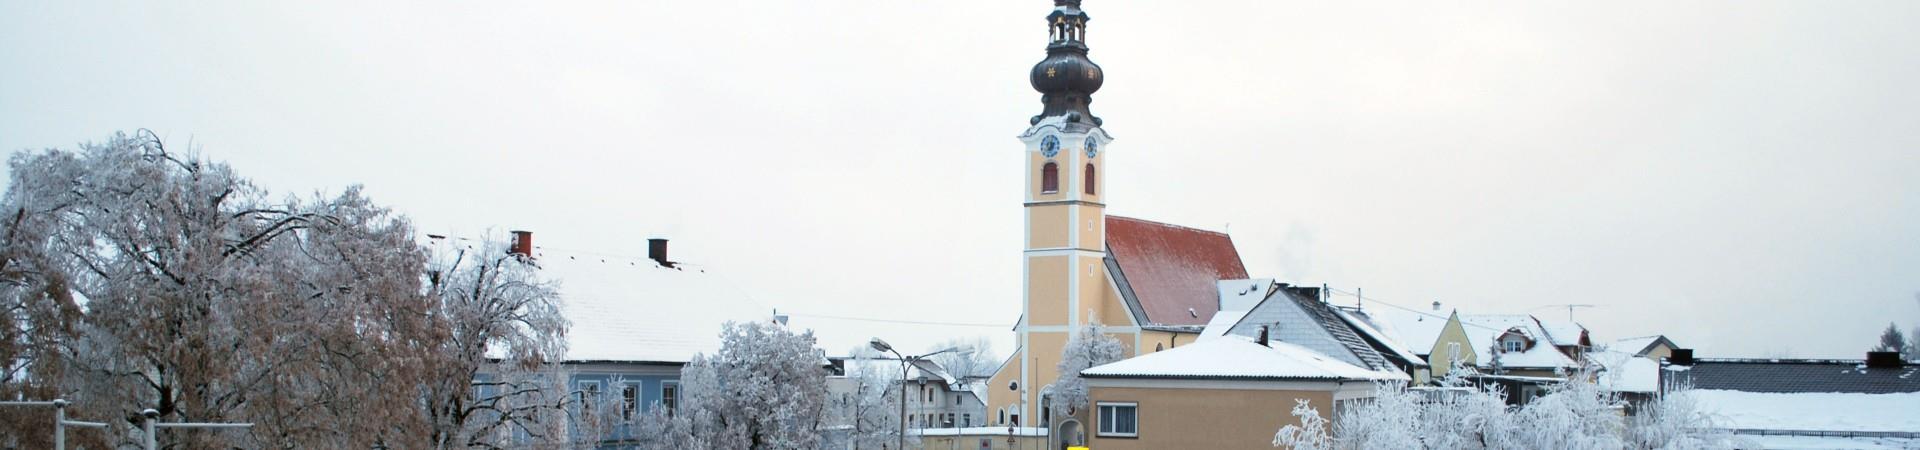 Gunskirchen_Winter